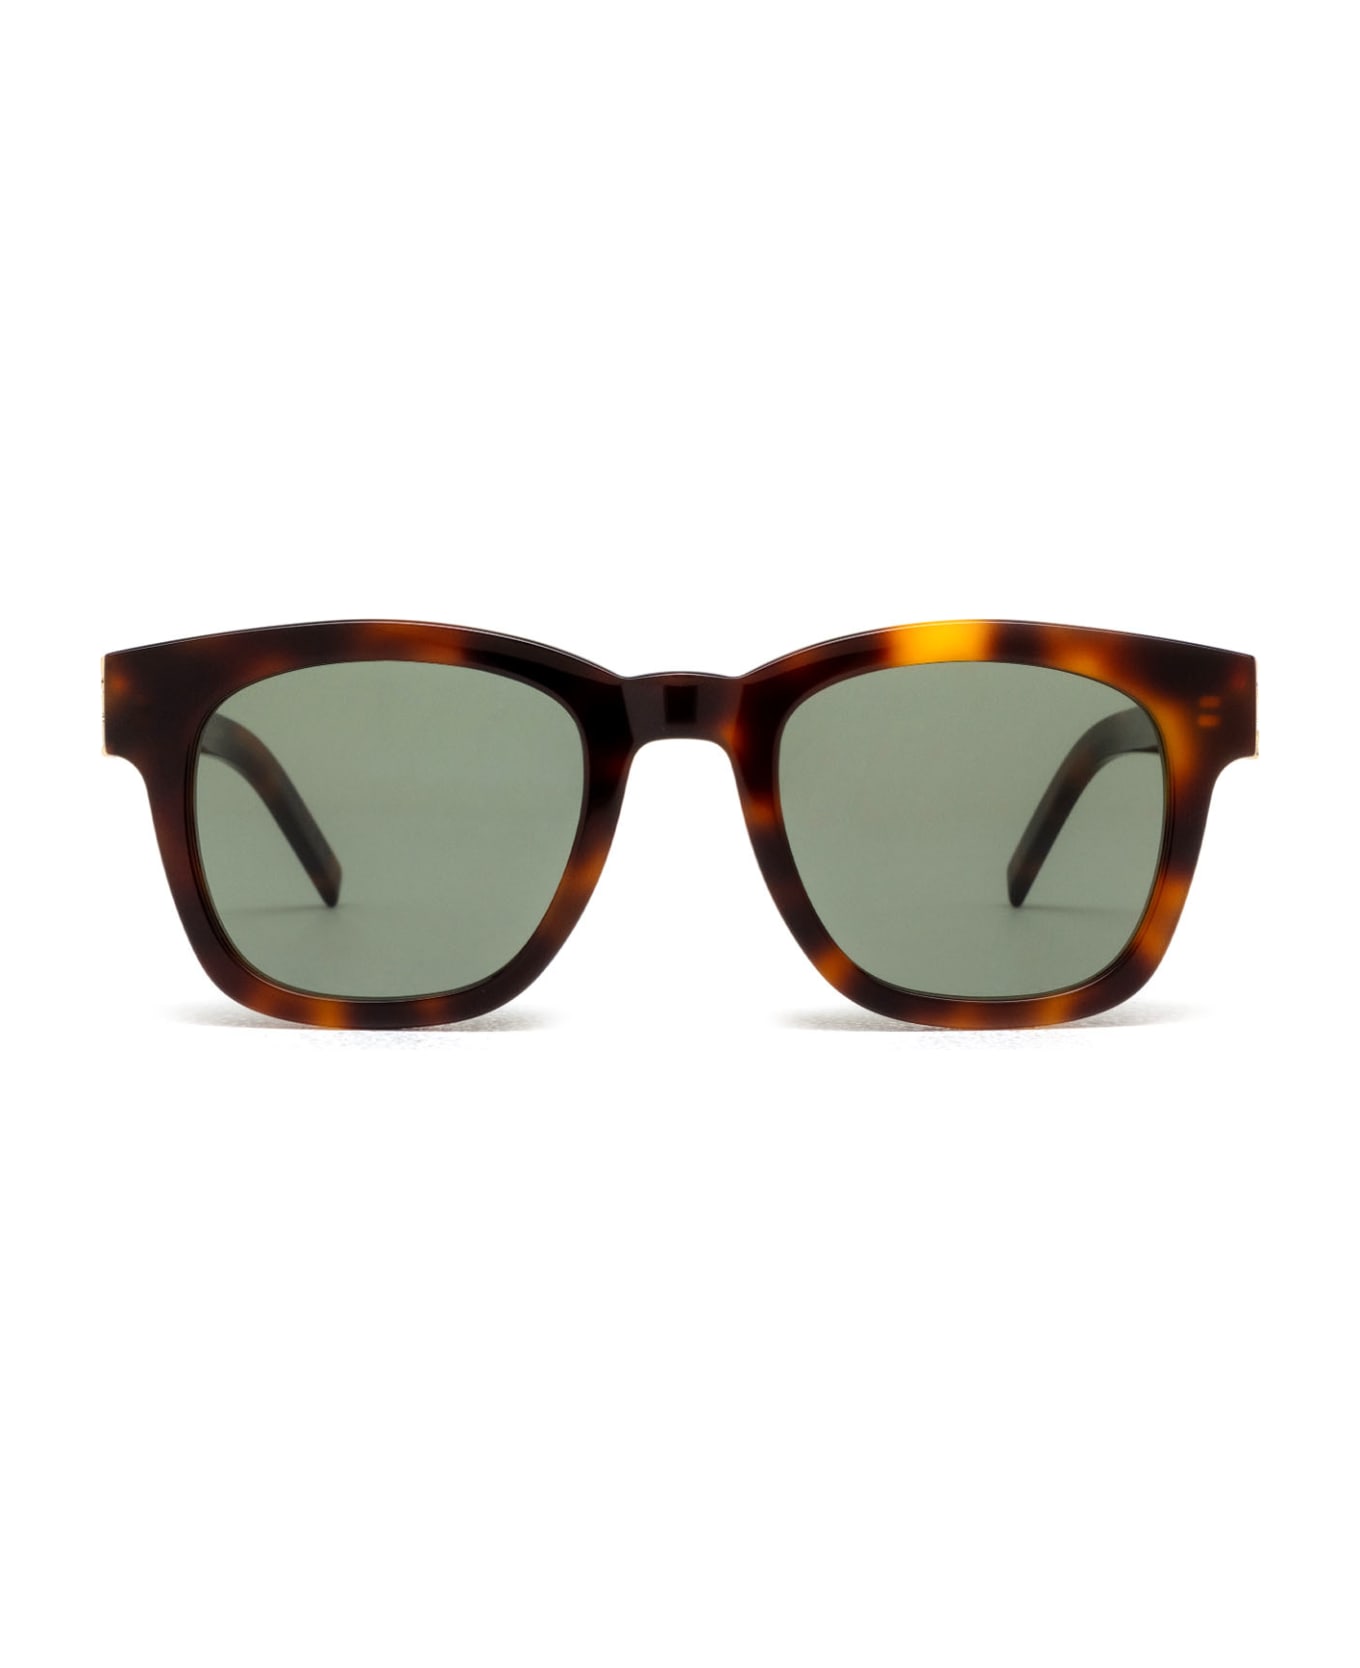 Saint Laurent Eyewear Sl M124 Havana Sunglasses - Havana